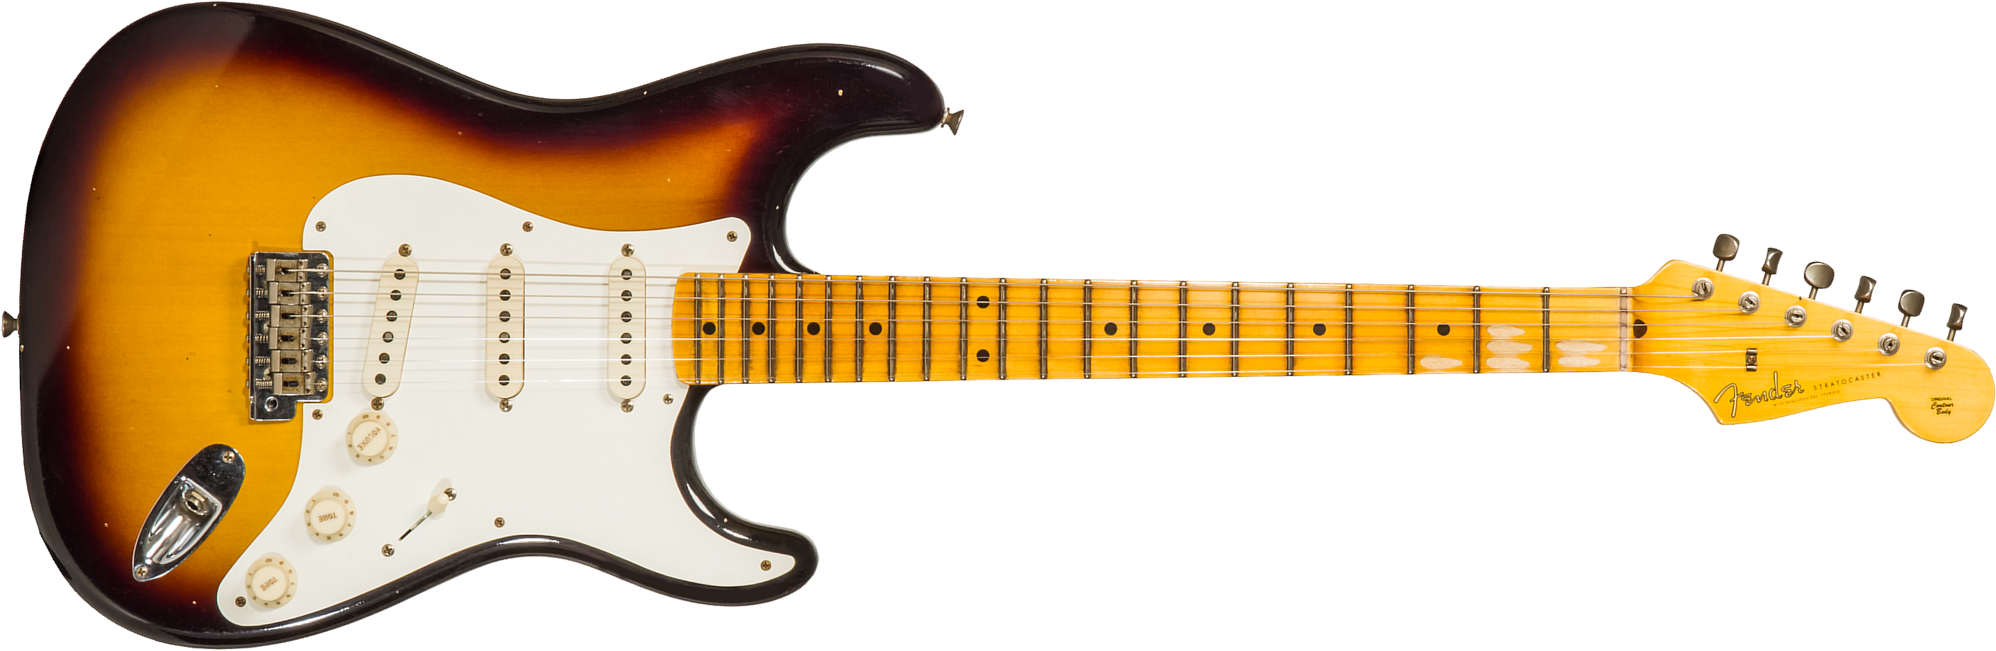 Fender Custom Shop Strat 1956 3s Trem Mn #cz571884 - Journeyman Relic Aged 2-color Sunburst - Str shape electric guitar - Main picture